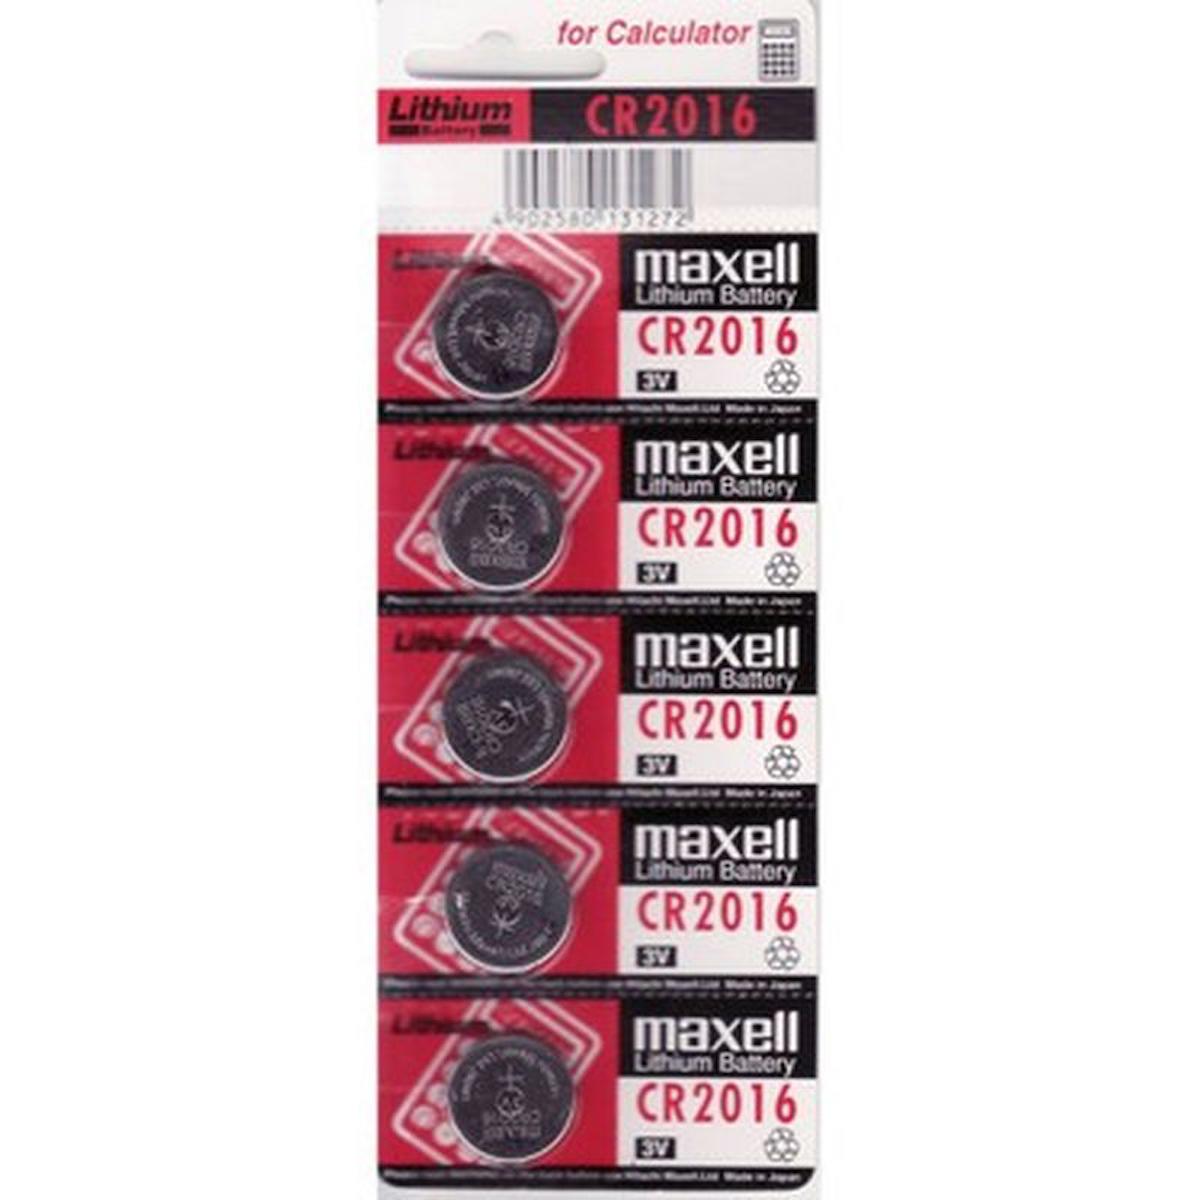 Maxell CR2016 3 V Lityum Düğme Pil 5'li